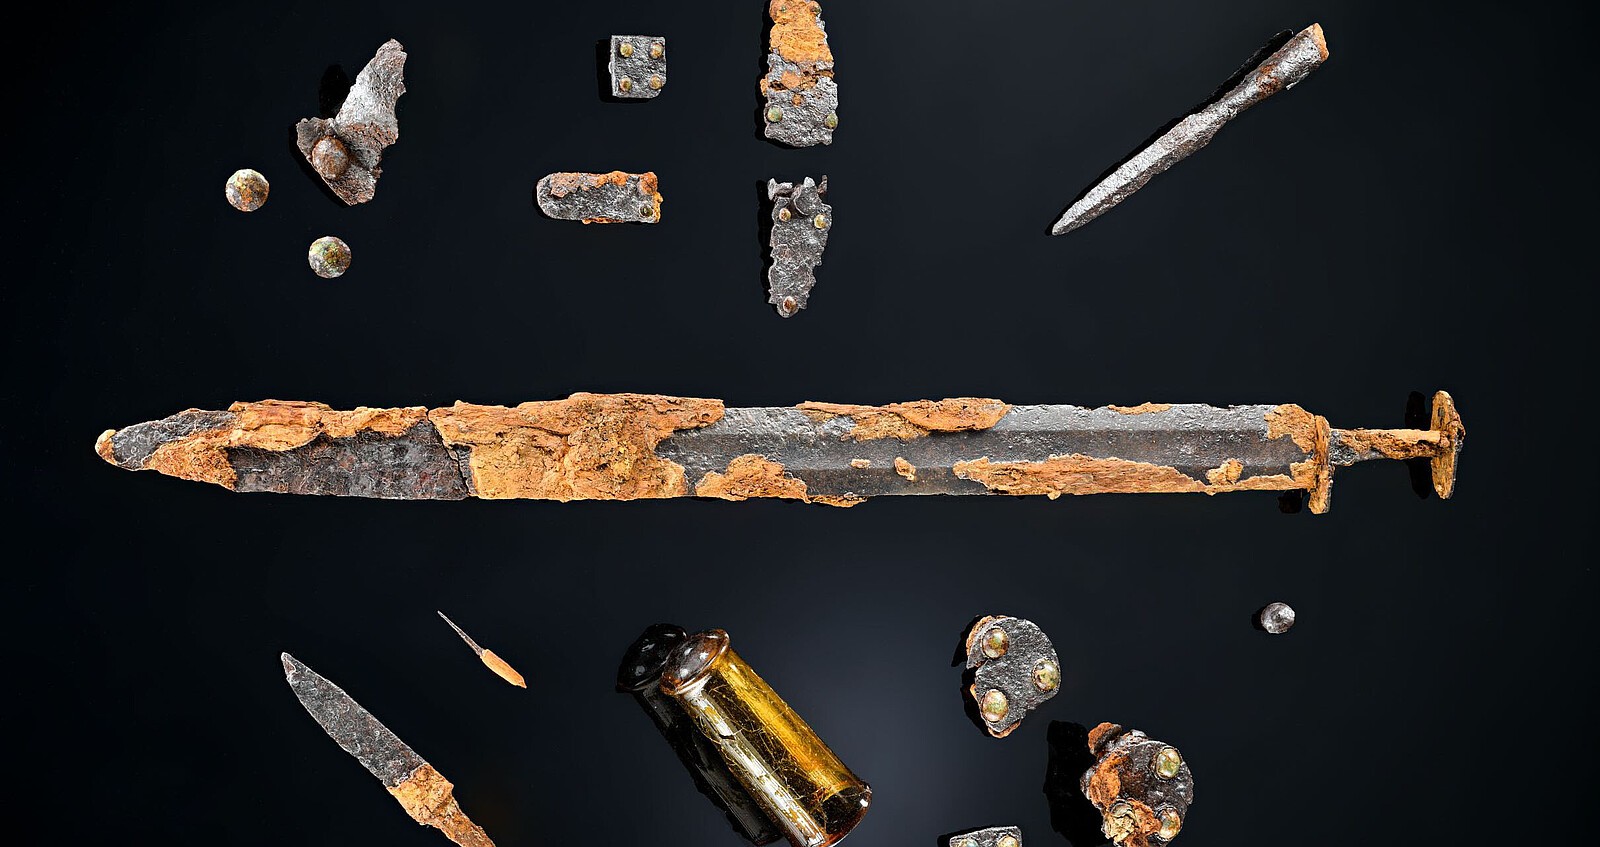 Armas e joias da Idade Média encontradas no sudoeste da Alemanha, perto do rio Danúbio (Foto: Secretaria Estadual de Preservação de Monumentos do RPS / Yvonne Mühleis)